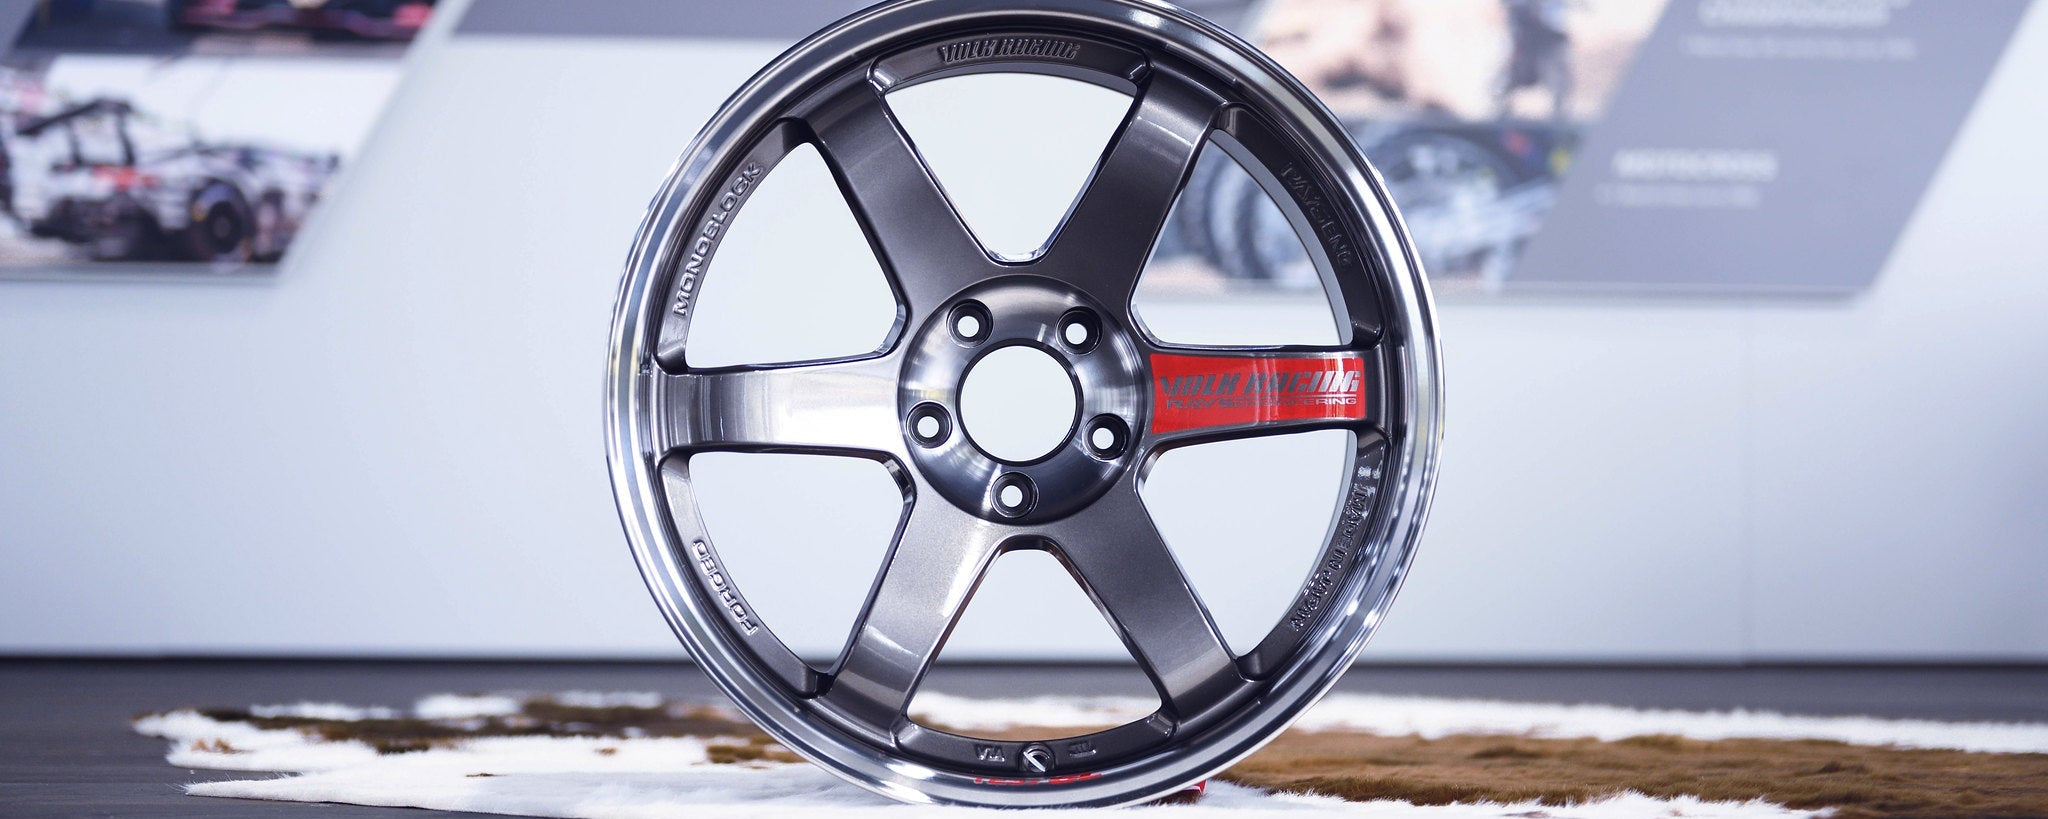 Volk Racing TE37SL GR Yaris Custom Batch - Premium Wheels from Volk Racing - From just $4090.00! Shop now at MK MOTORSPORTS